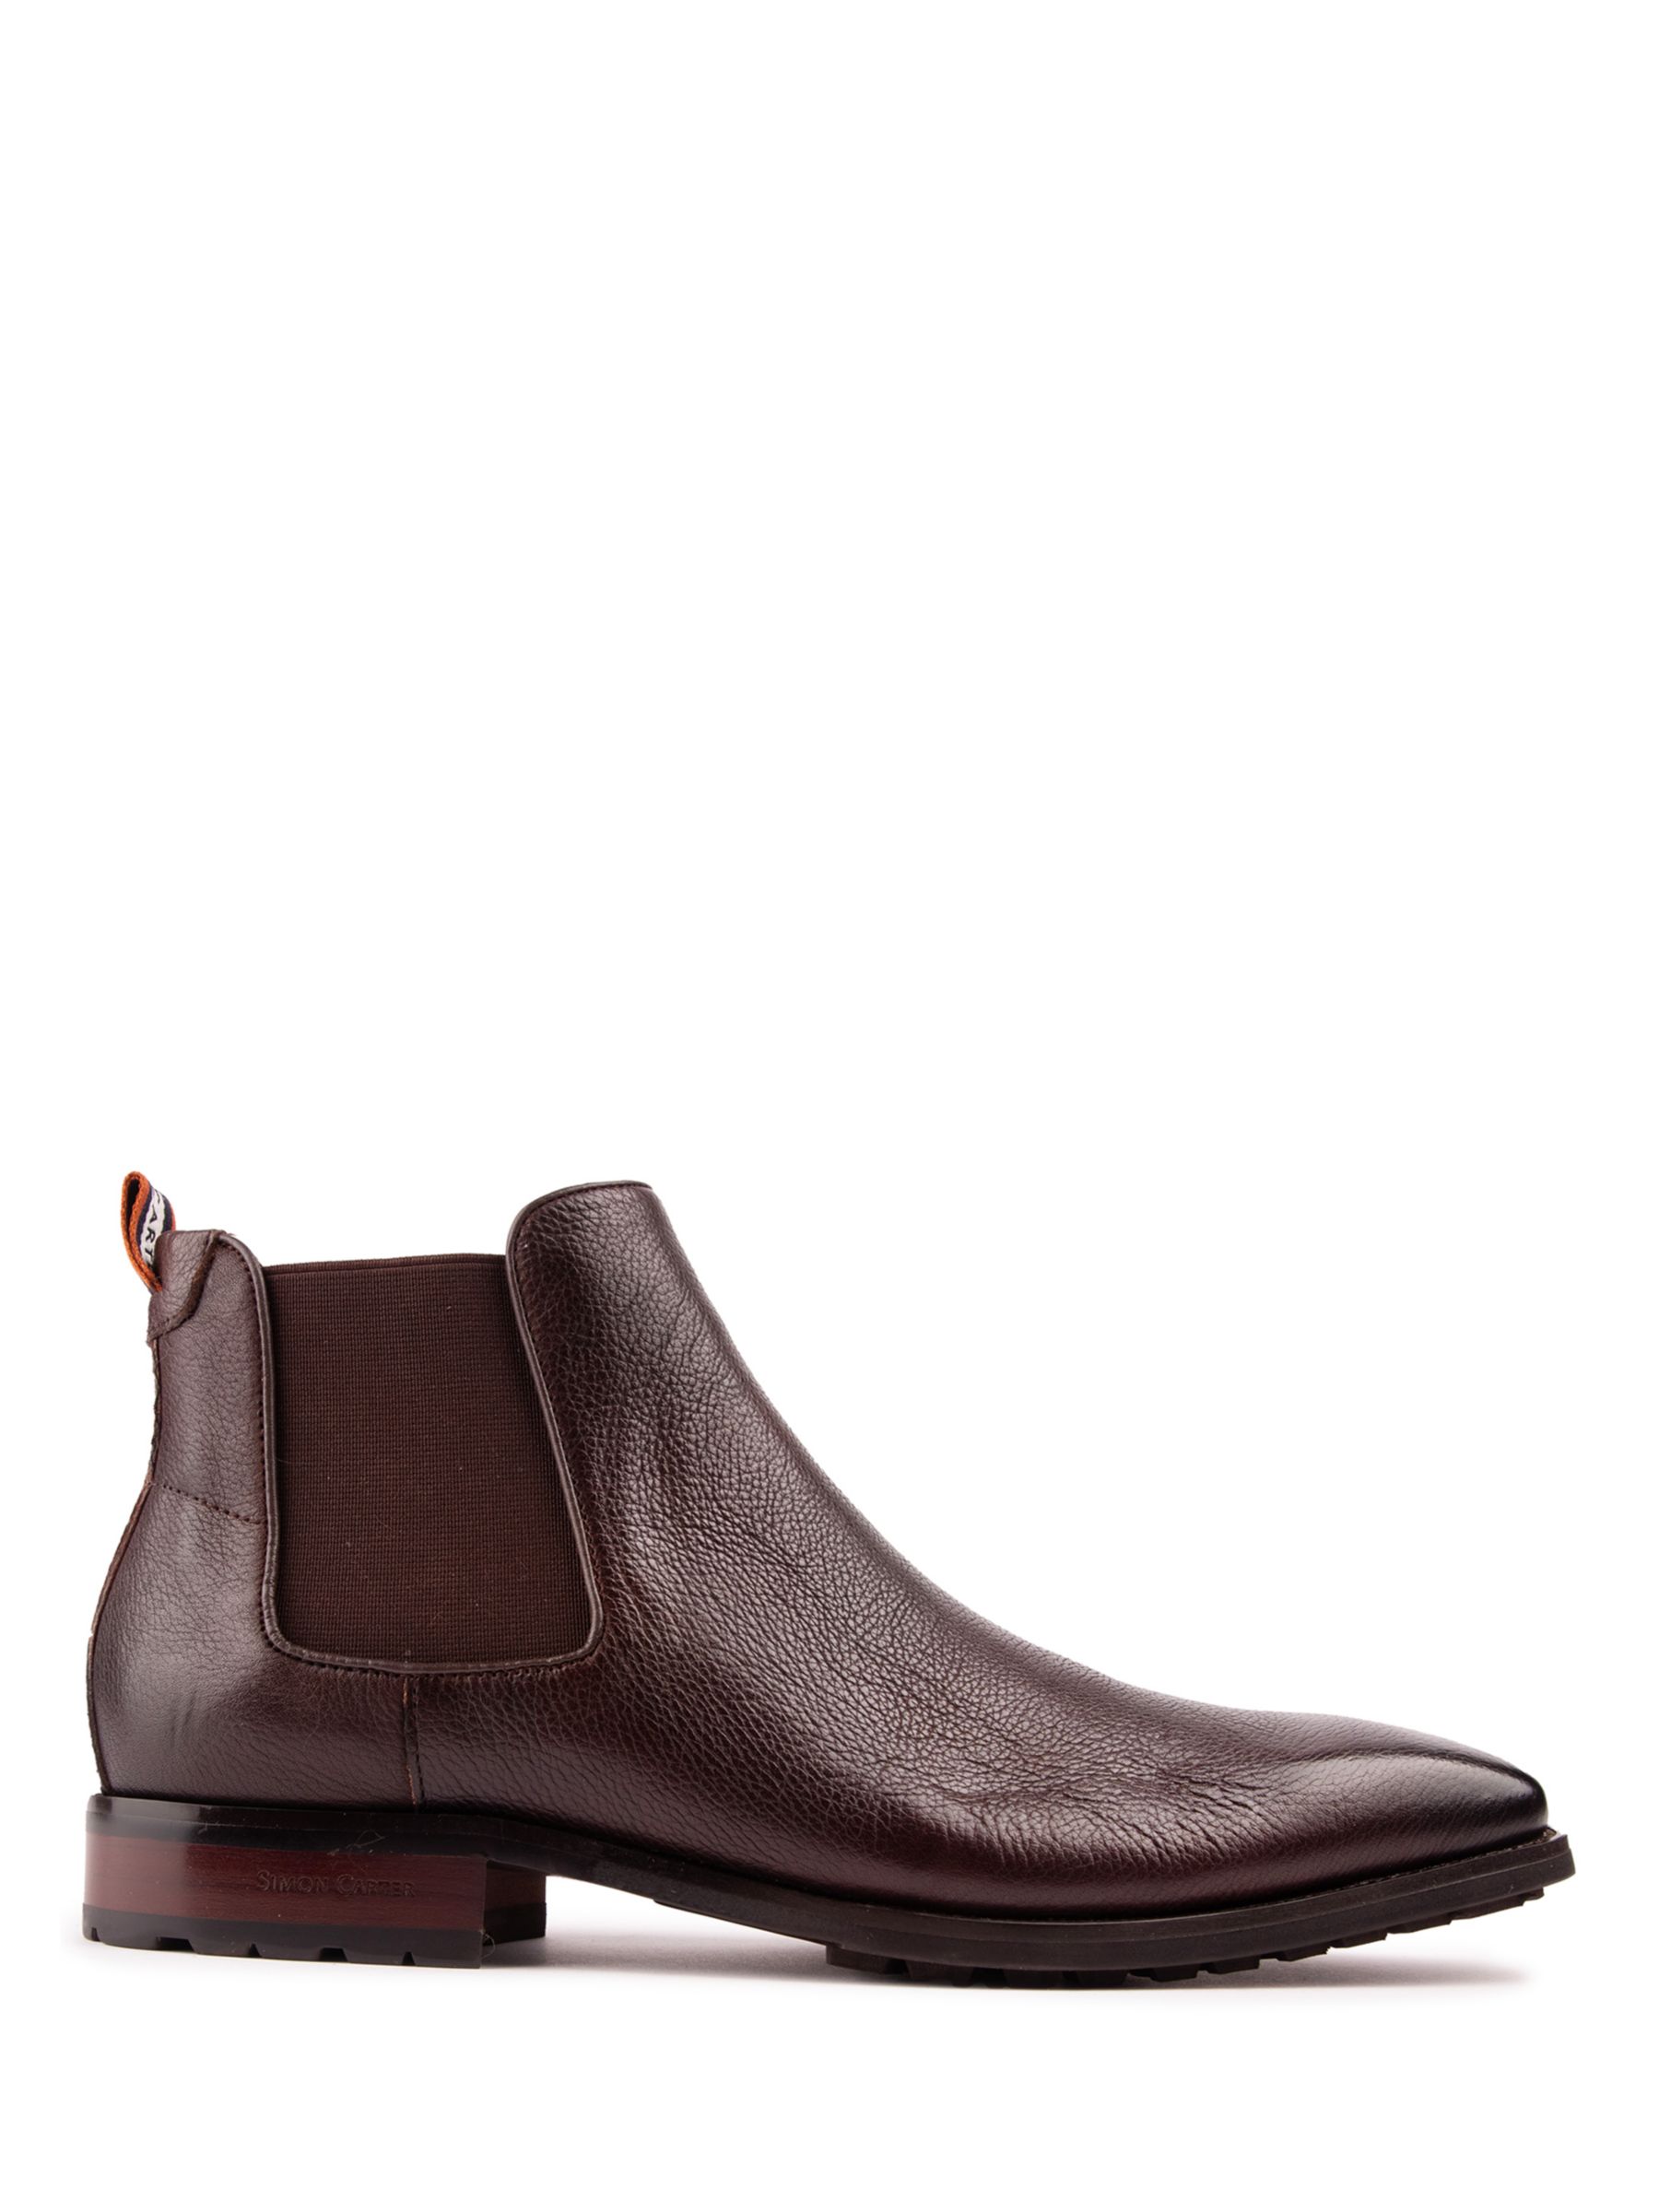 Кожаные ботинки челси Clover Simon Carter, коричневый ботинки челси мужские из флока классические ботинки ручной работы без застежки черные